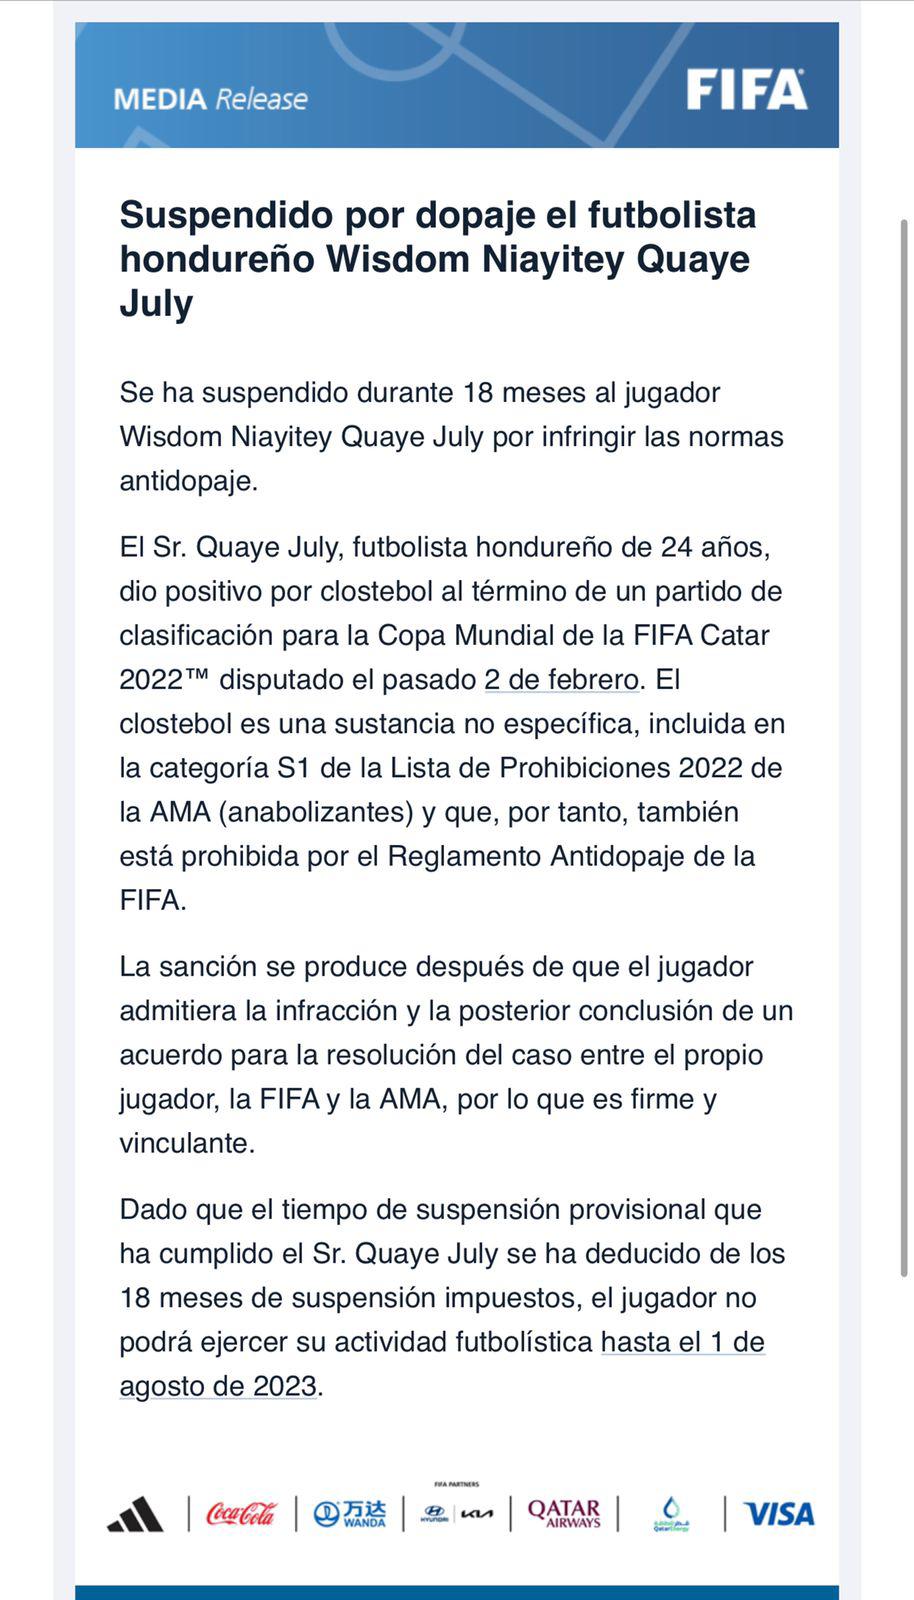 El comunicado oficial de FIFA sobre el caso de dopaje del futbolista Wisdom Quayé.